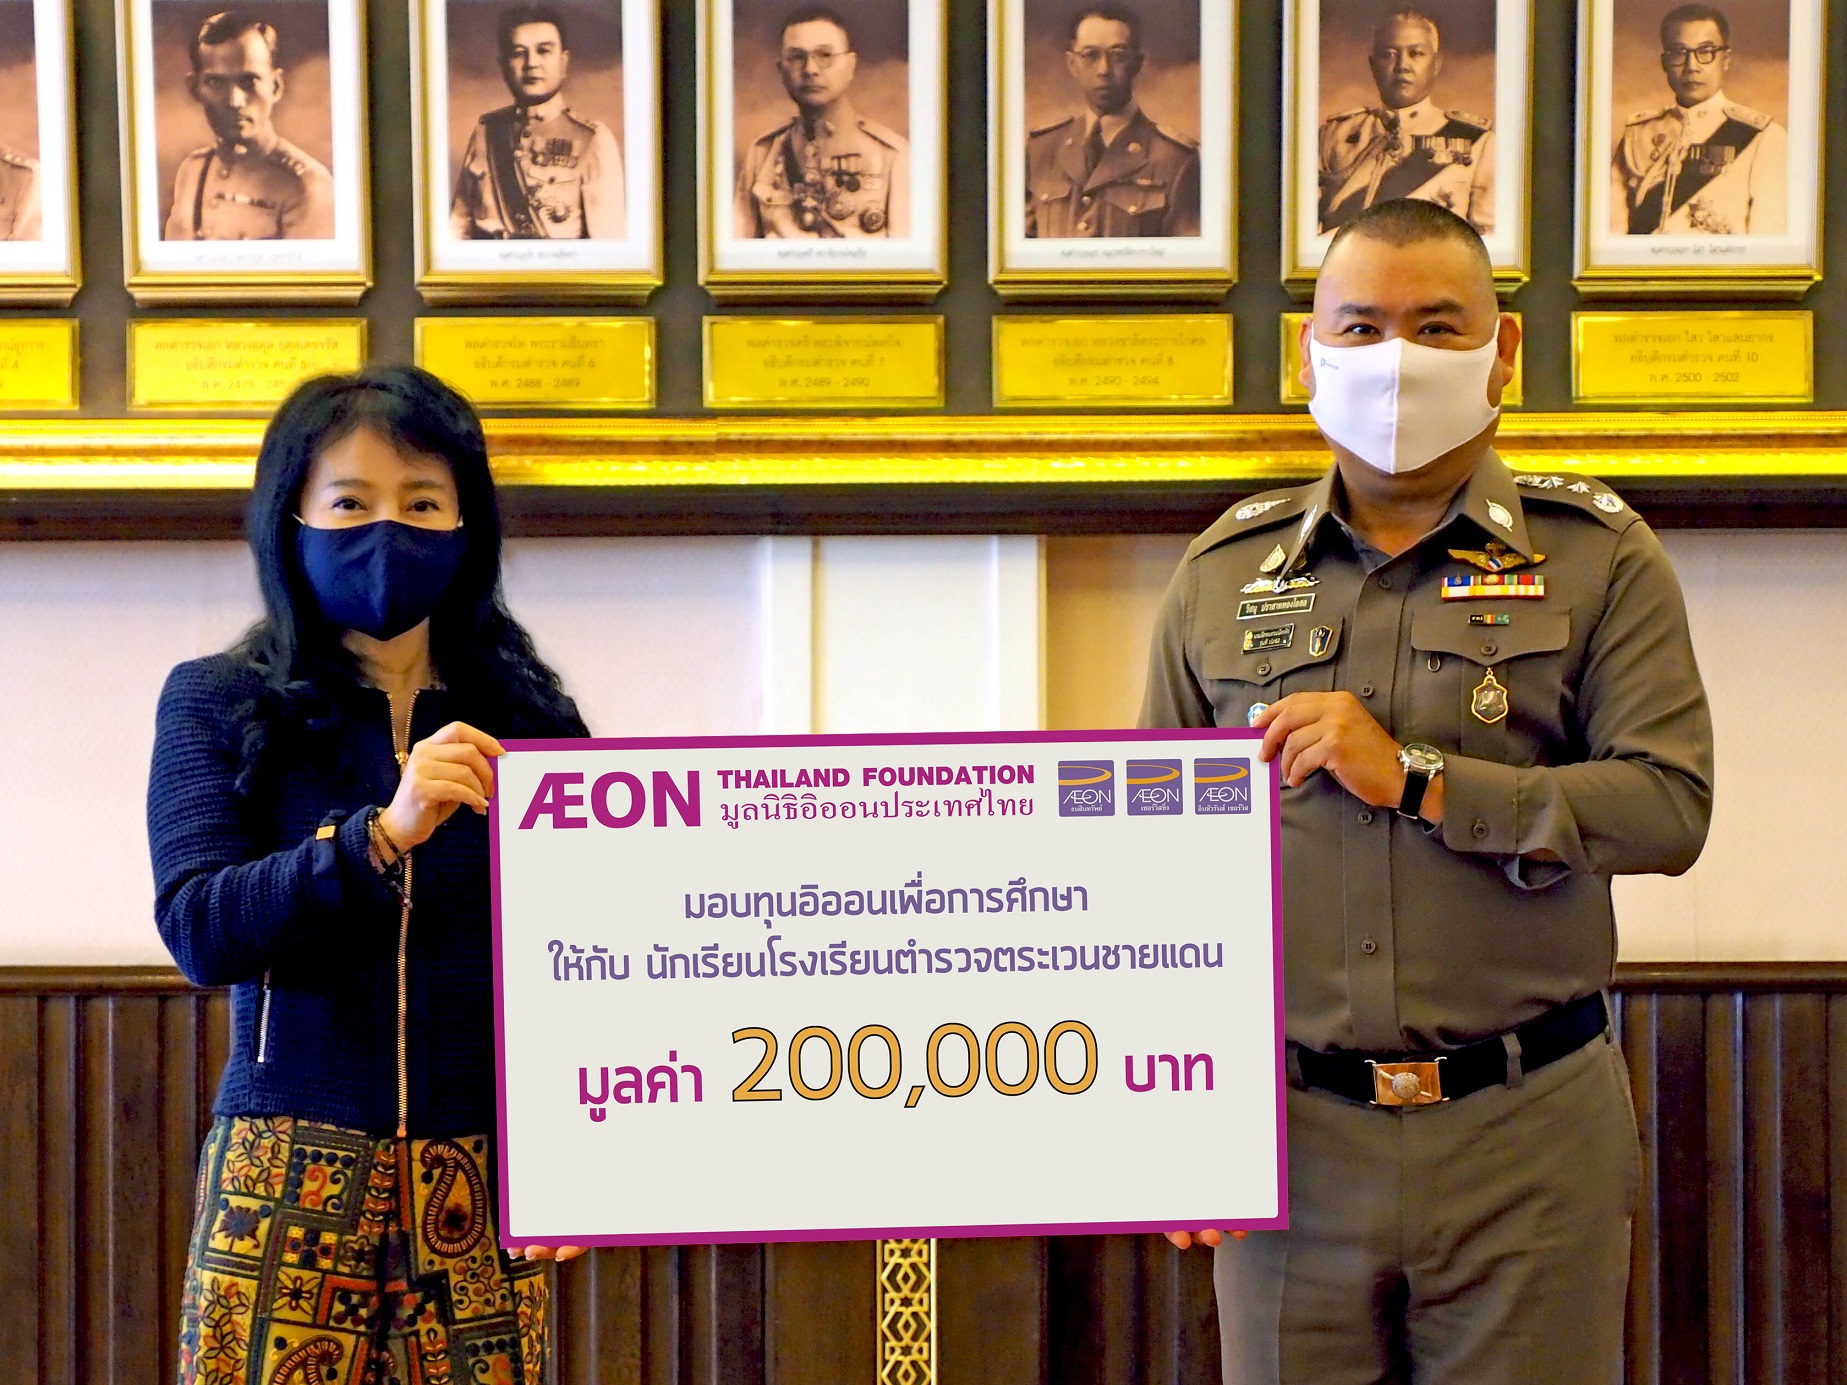 ภาพข่าว : มูลนิธิอิออนประเทศไทย มอบทุนส่งเสริมการศึกษา ให้กับ นักเรียนโรงเรียนตำรวจตระเวนชายแดน ประจำปี 2563